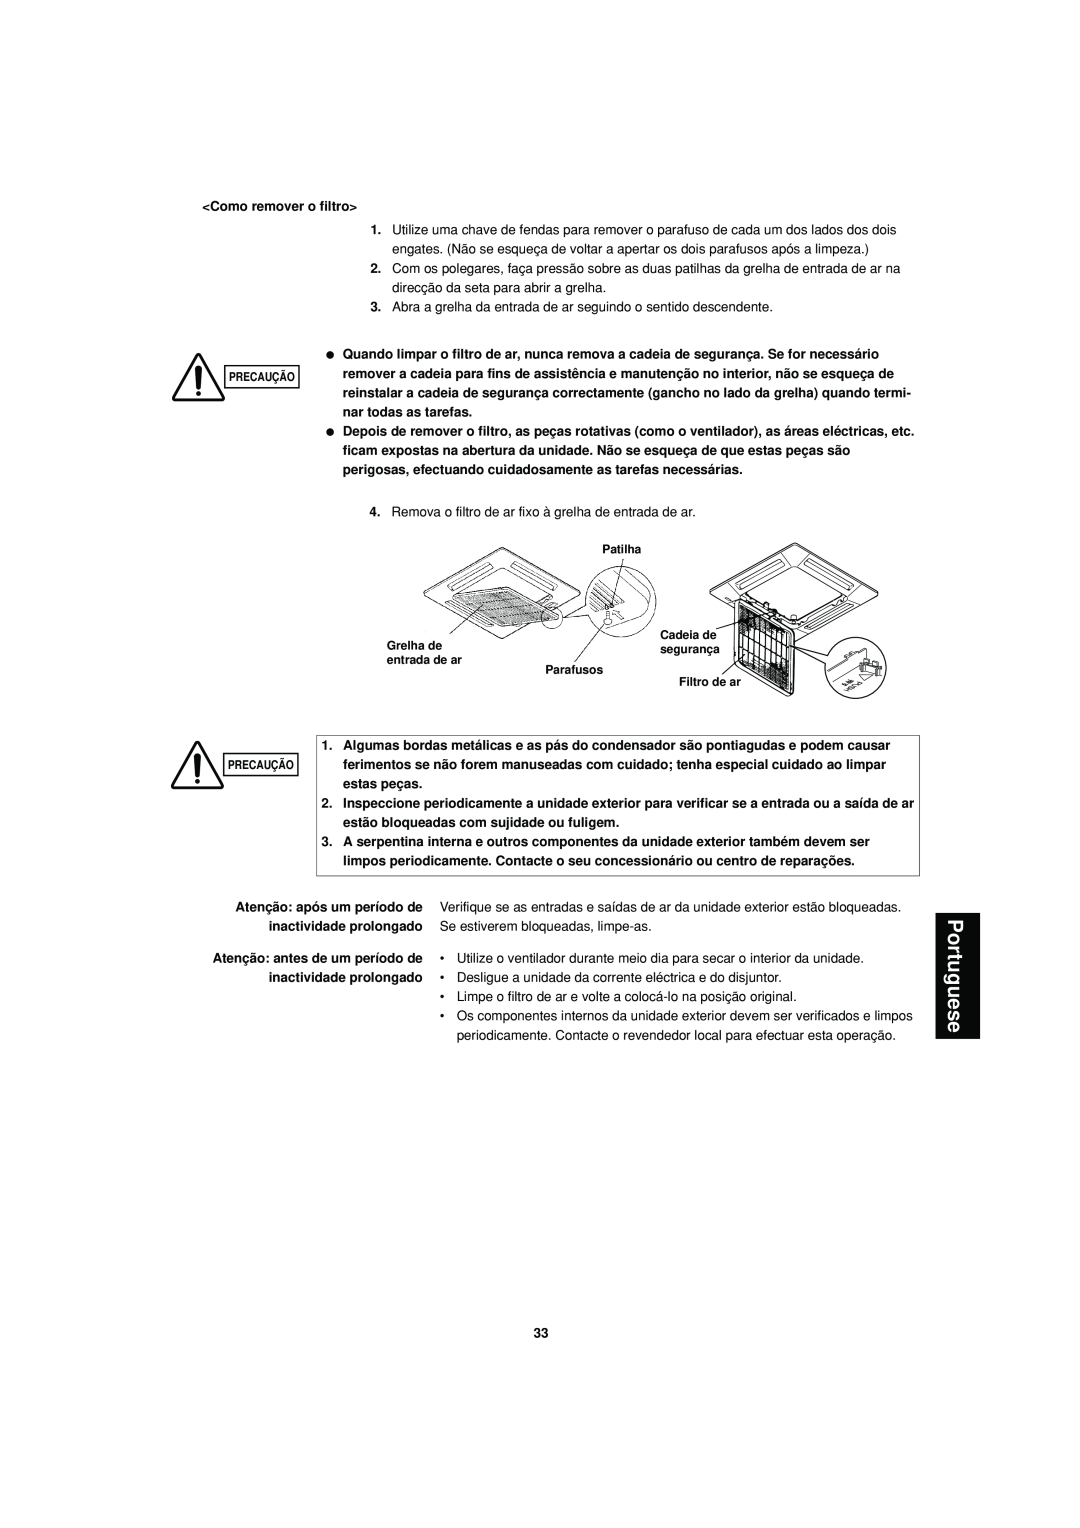 Sanyo SPW-XR254EH56 operation manual Portuguese, Como remover o filtro 